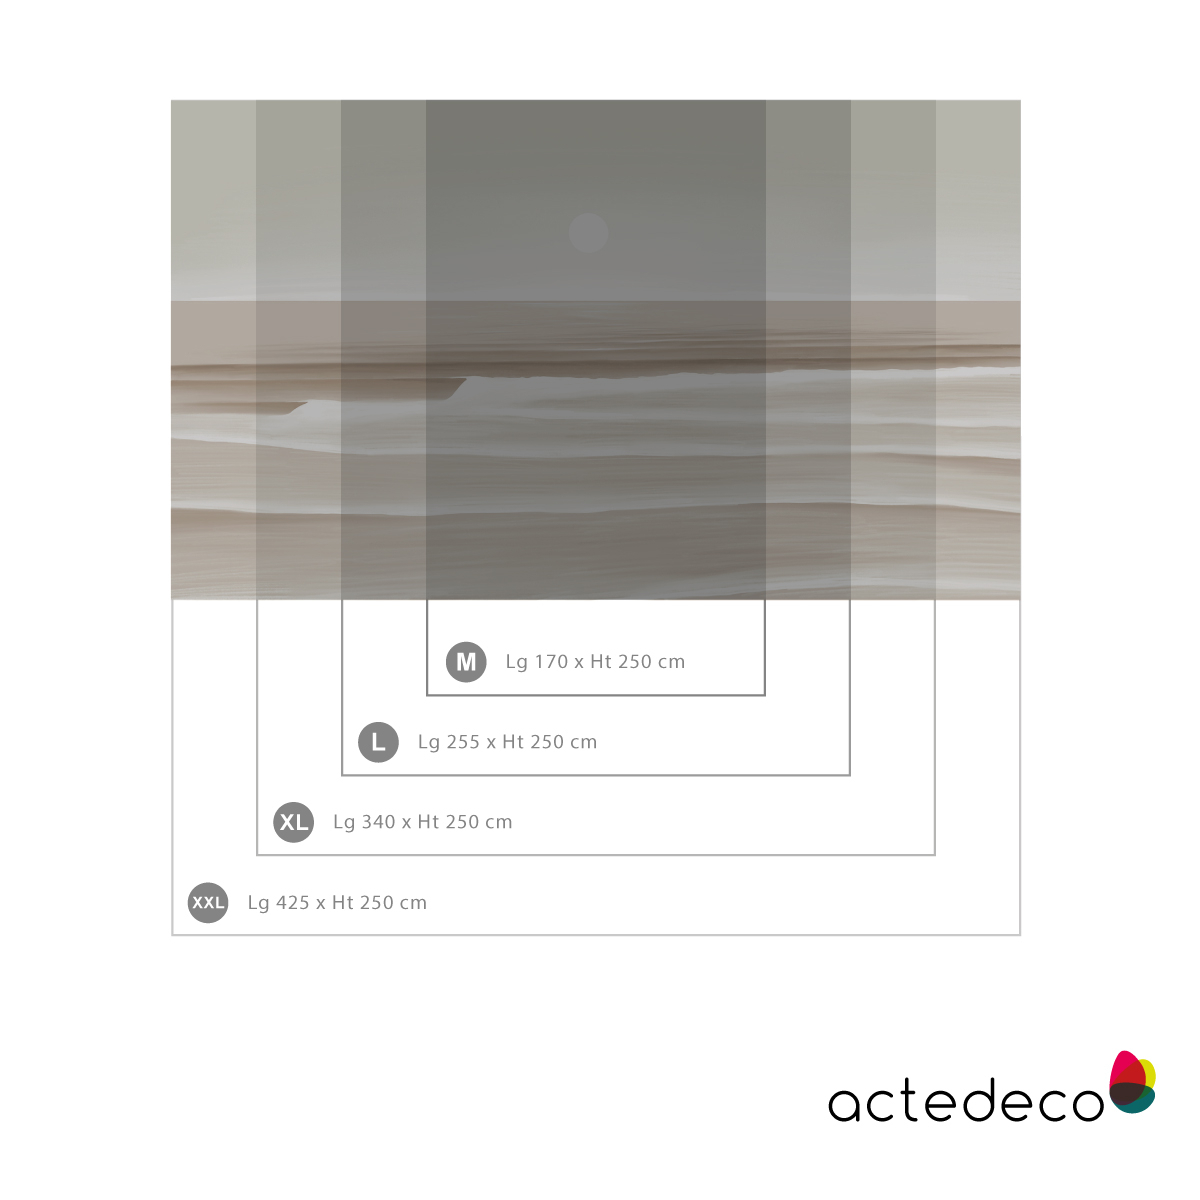 Panoramic sunset wallpaper - Acte-Deco